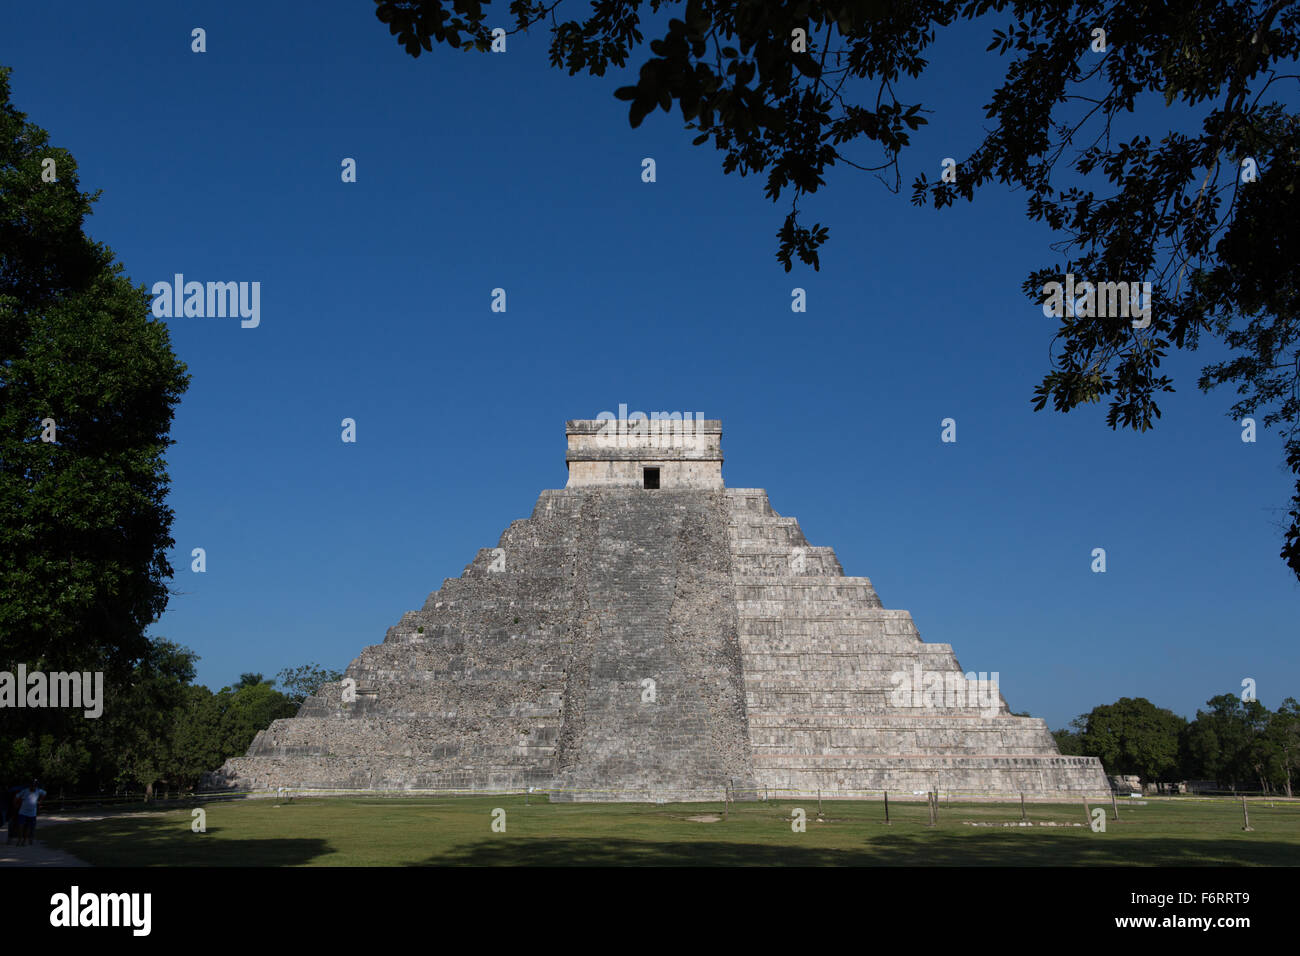 Mayan ruins at Chichen Itza, Yucatan peninsula, Mexico Stock Photo